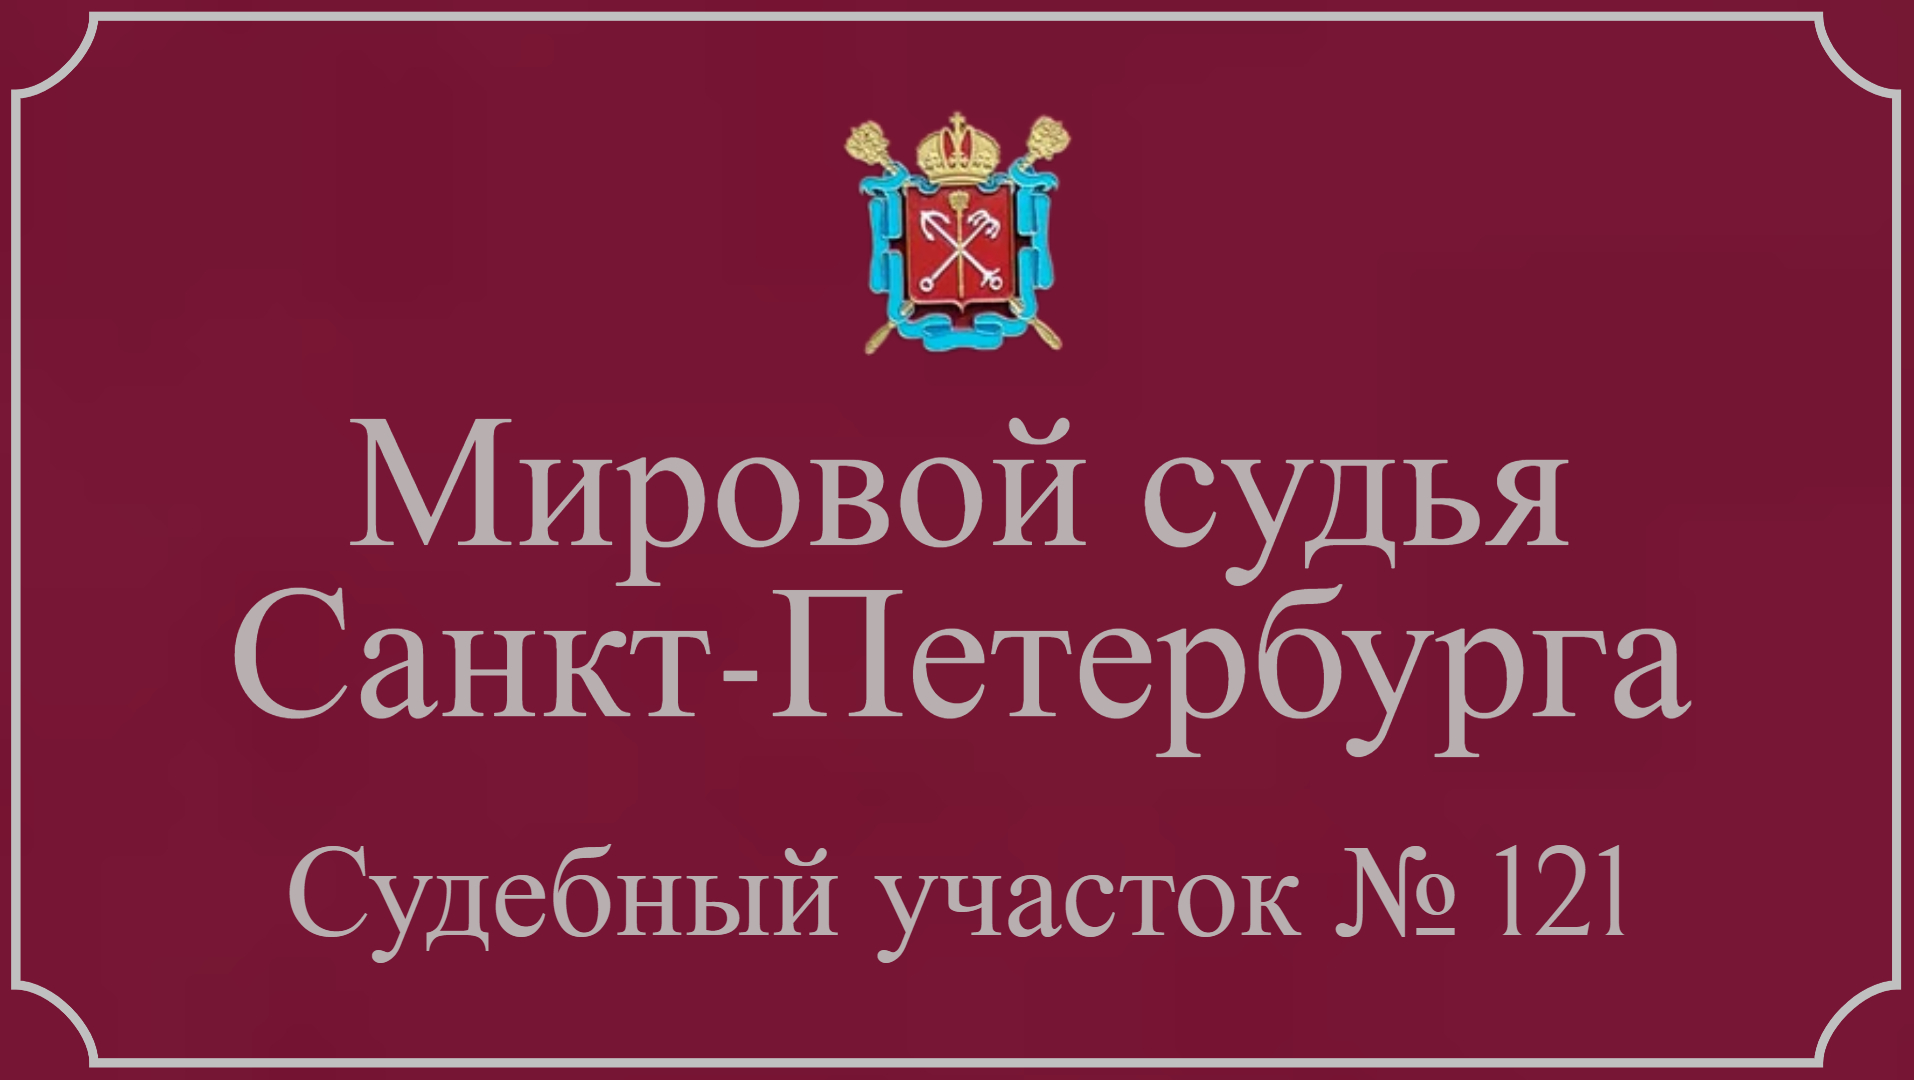 Информация по 121 судебному участку в Санкт-Петербурге.